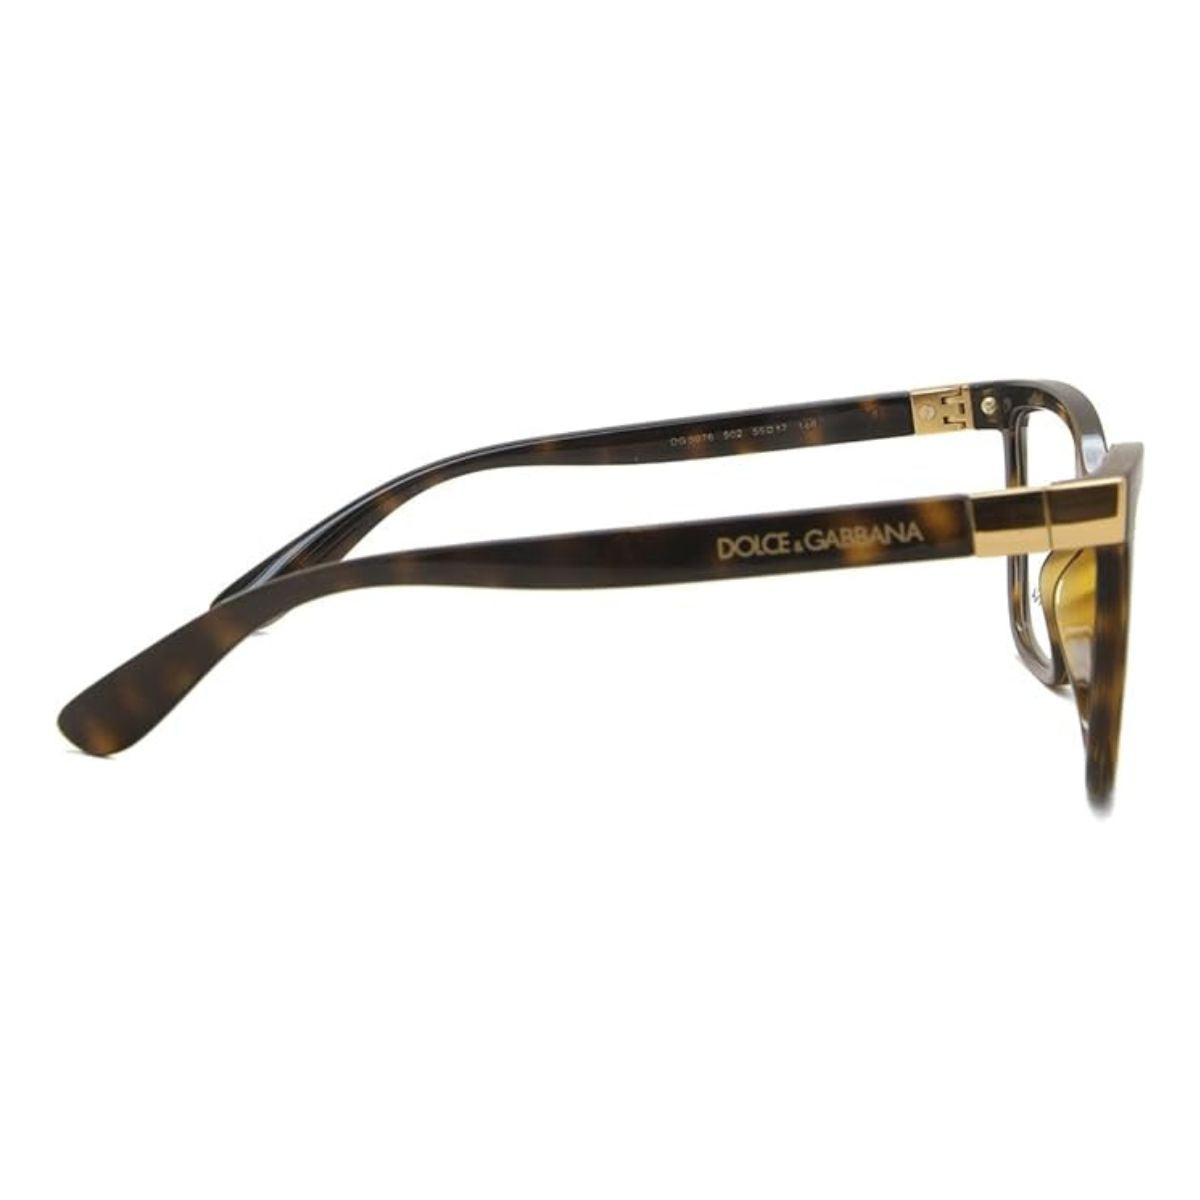 "Best Dolce & Gabbana 5076 502 Eye Sight Glasses Frame For Women's At Optorium"